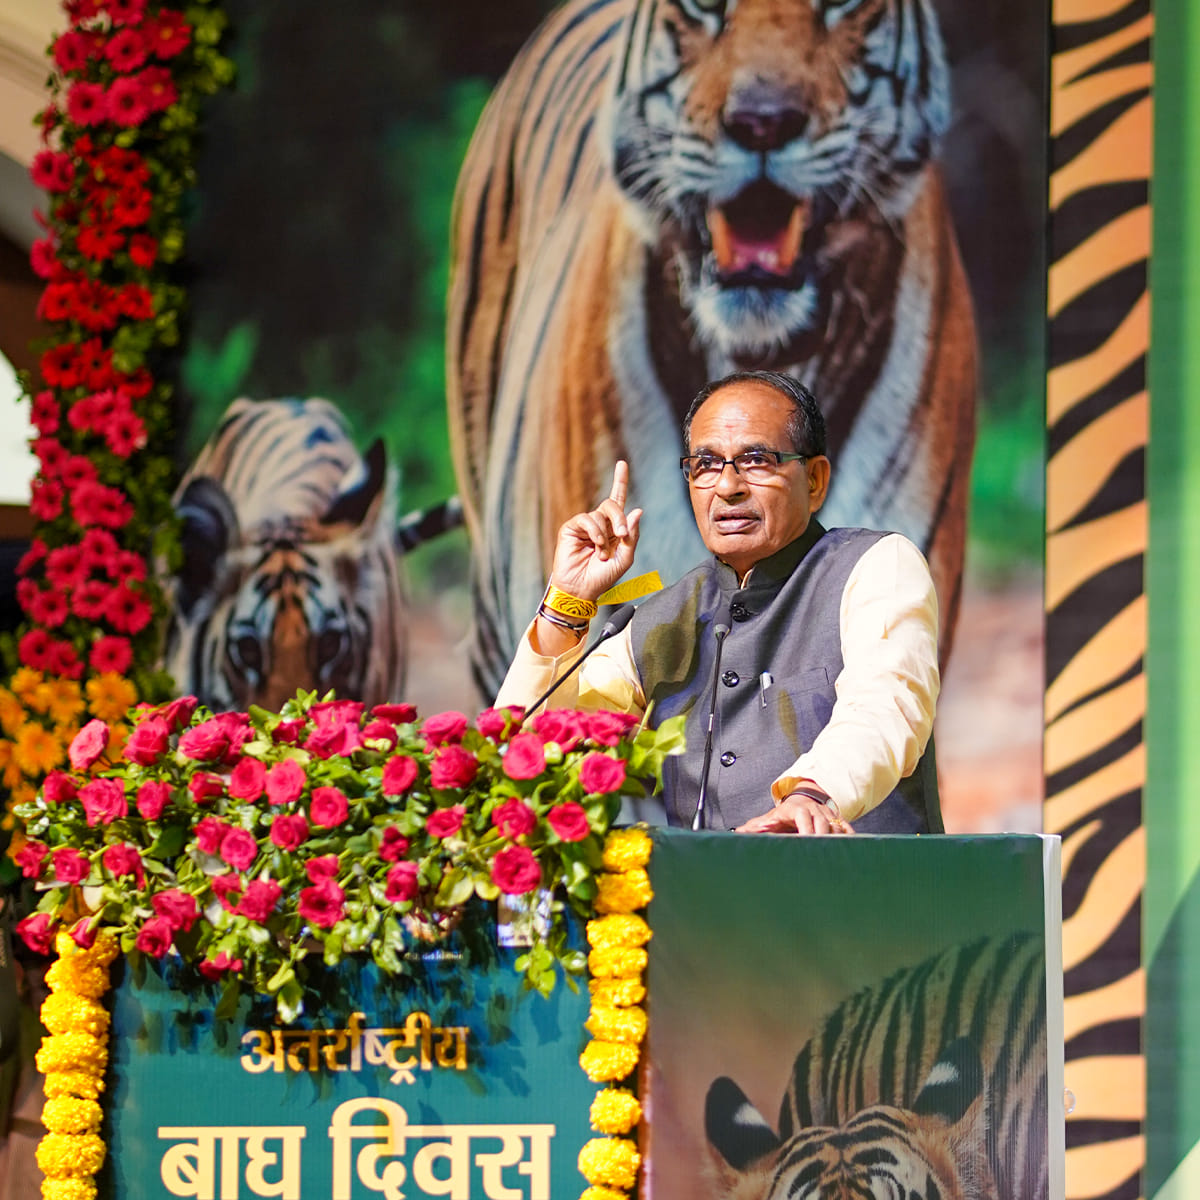 भारत सरकार ने जारी किये बाघों के आंकड़े